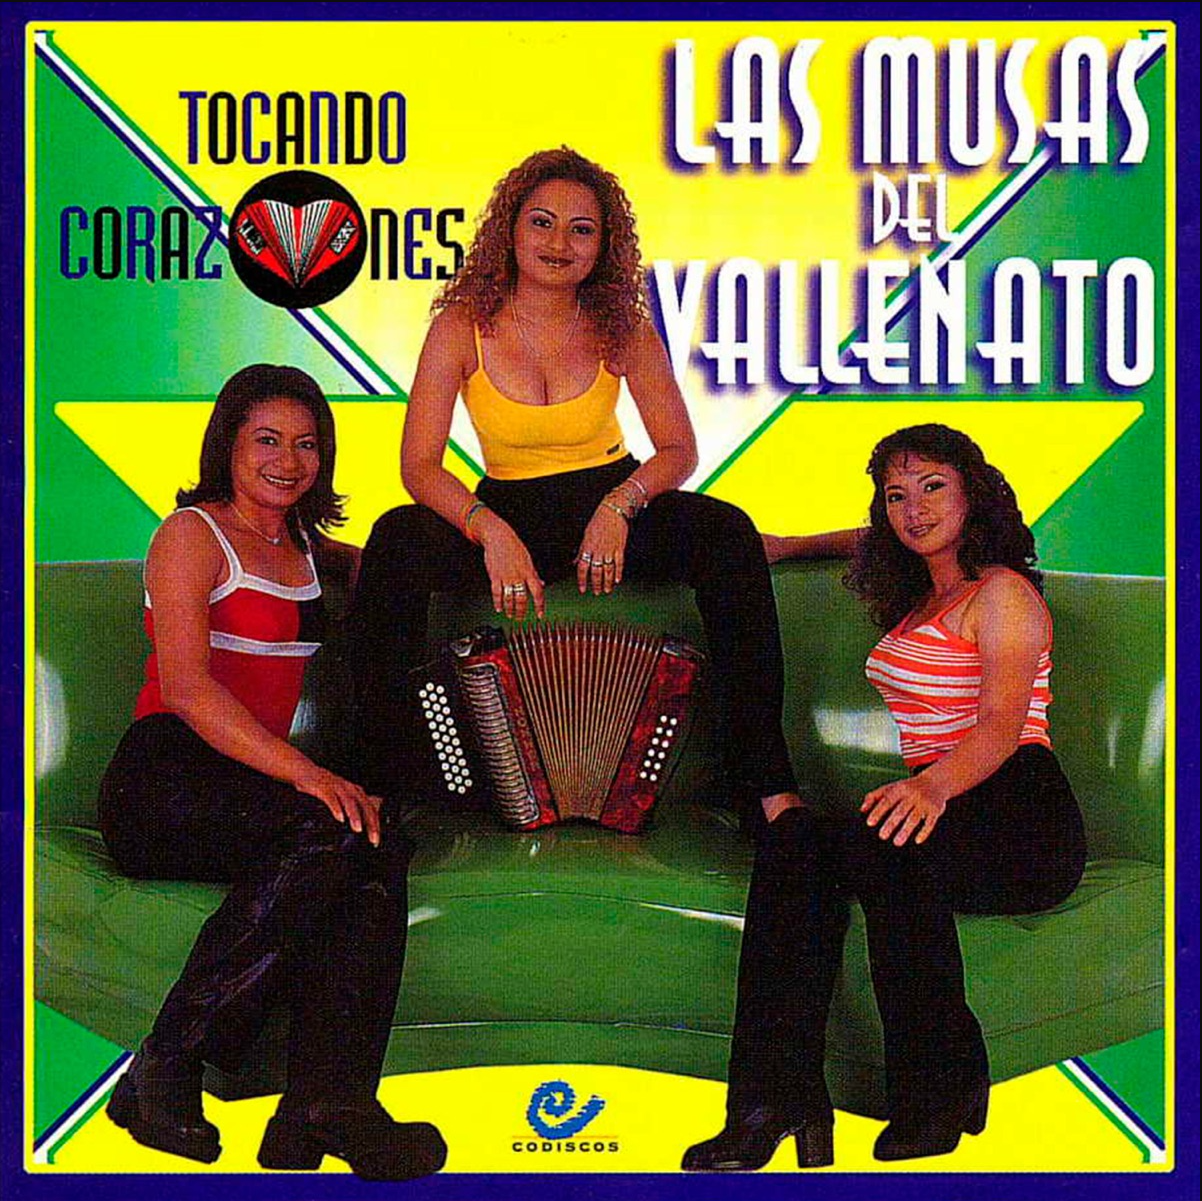 December 7, 1998 - Tocando Corazones 